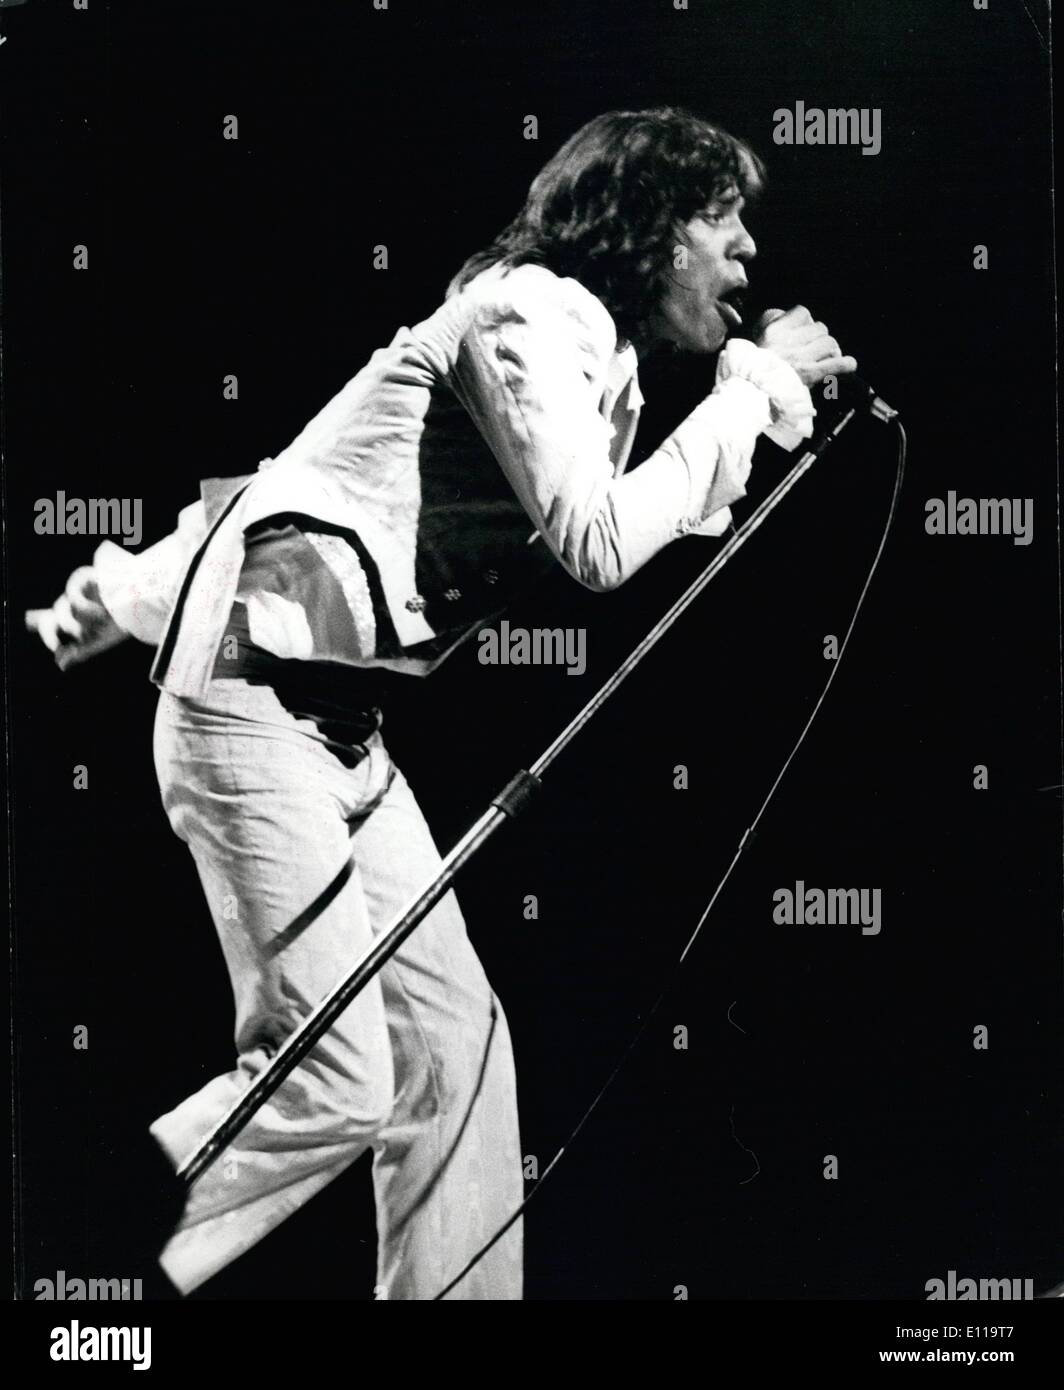 5. Mai 1976 - The Rolling Stones in London zurück: letzte Nacht eines der größten Rock-Shows wurde zurückgebracht nach London von den Rolling Stones. Vor 17.000 Fans in Earls Court mit 90 Minuten Musik Geist weht. Das Foto zeigt Mick Jagger der Anführer der Rolling Stones während der letzten Nächte Leistung gesehen. Stockfoto